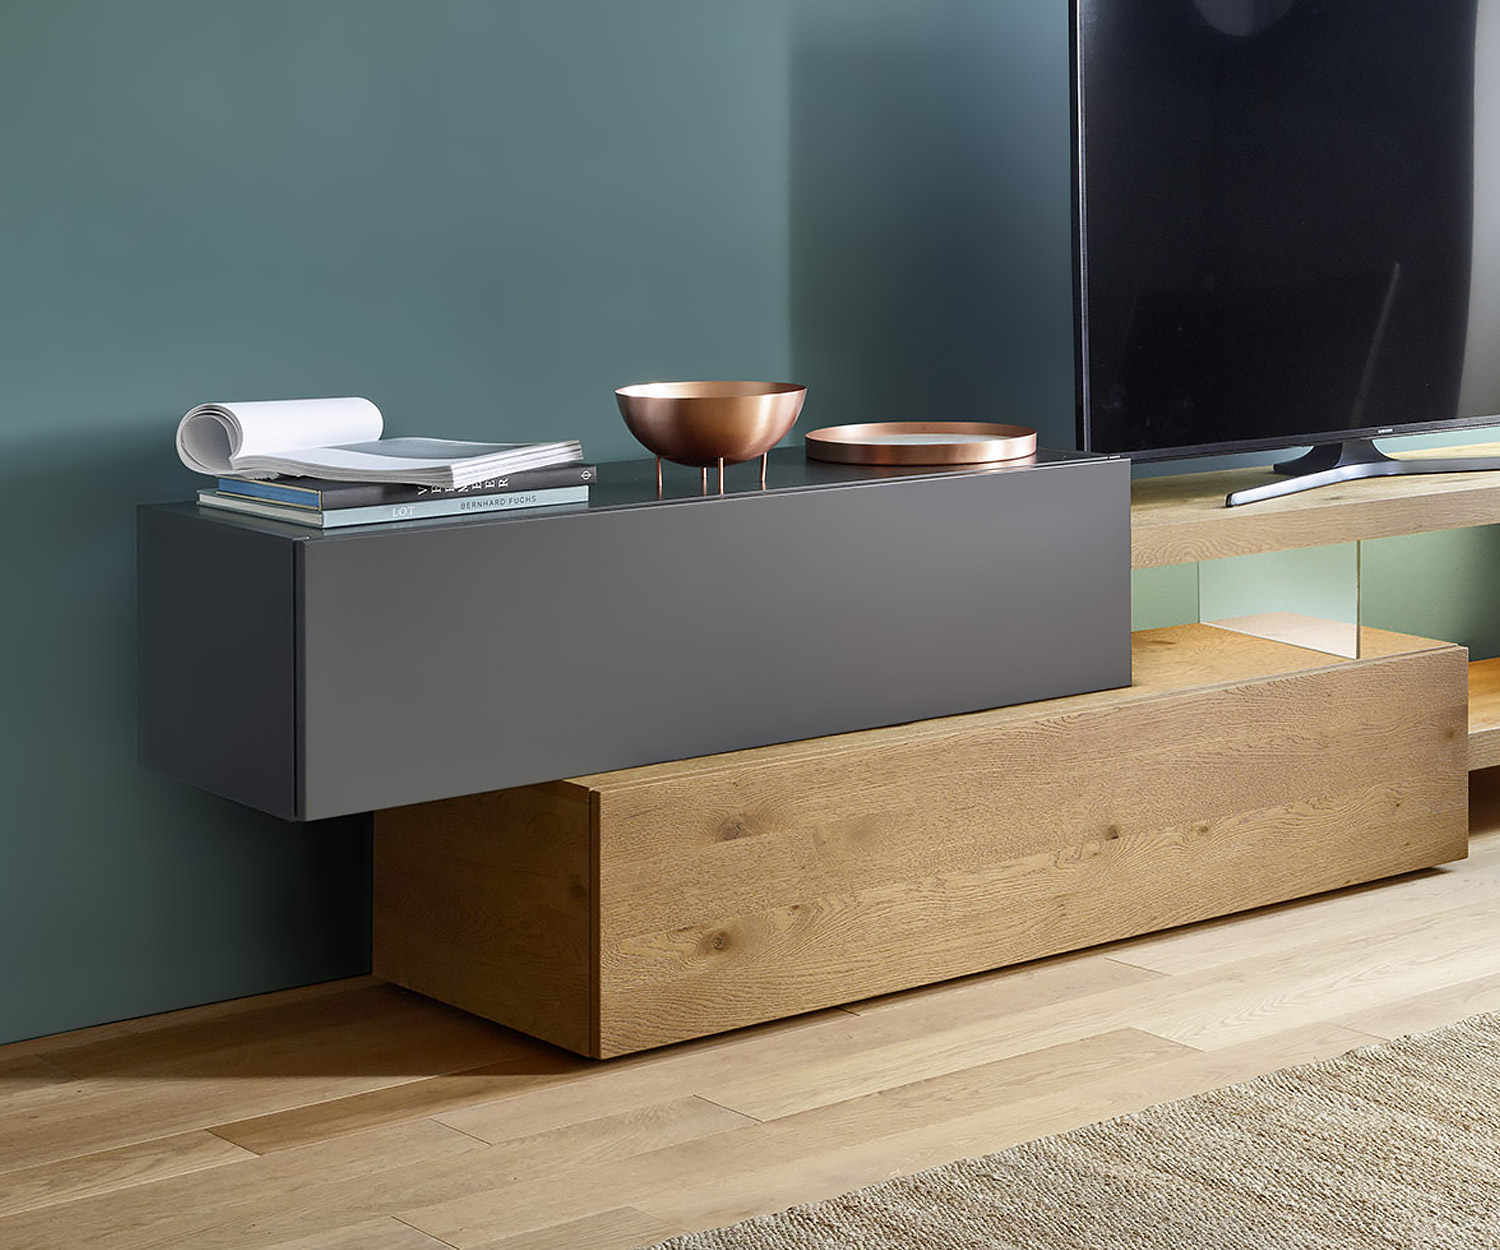 Exclusief design TV wandmeubel Livitalia C32 in mat grijs Design lowboard voor TV open vak